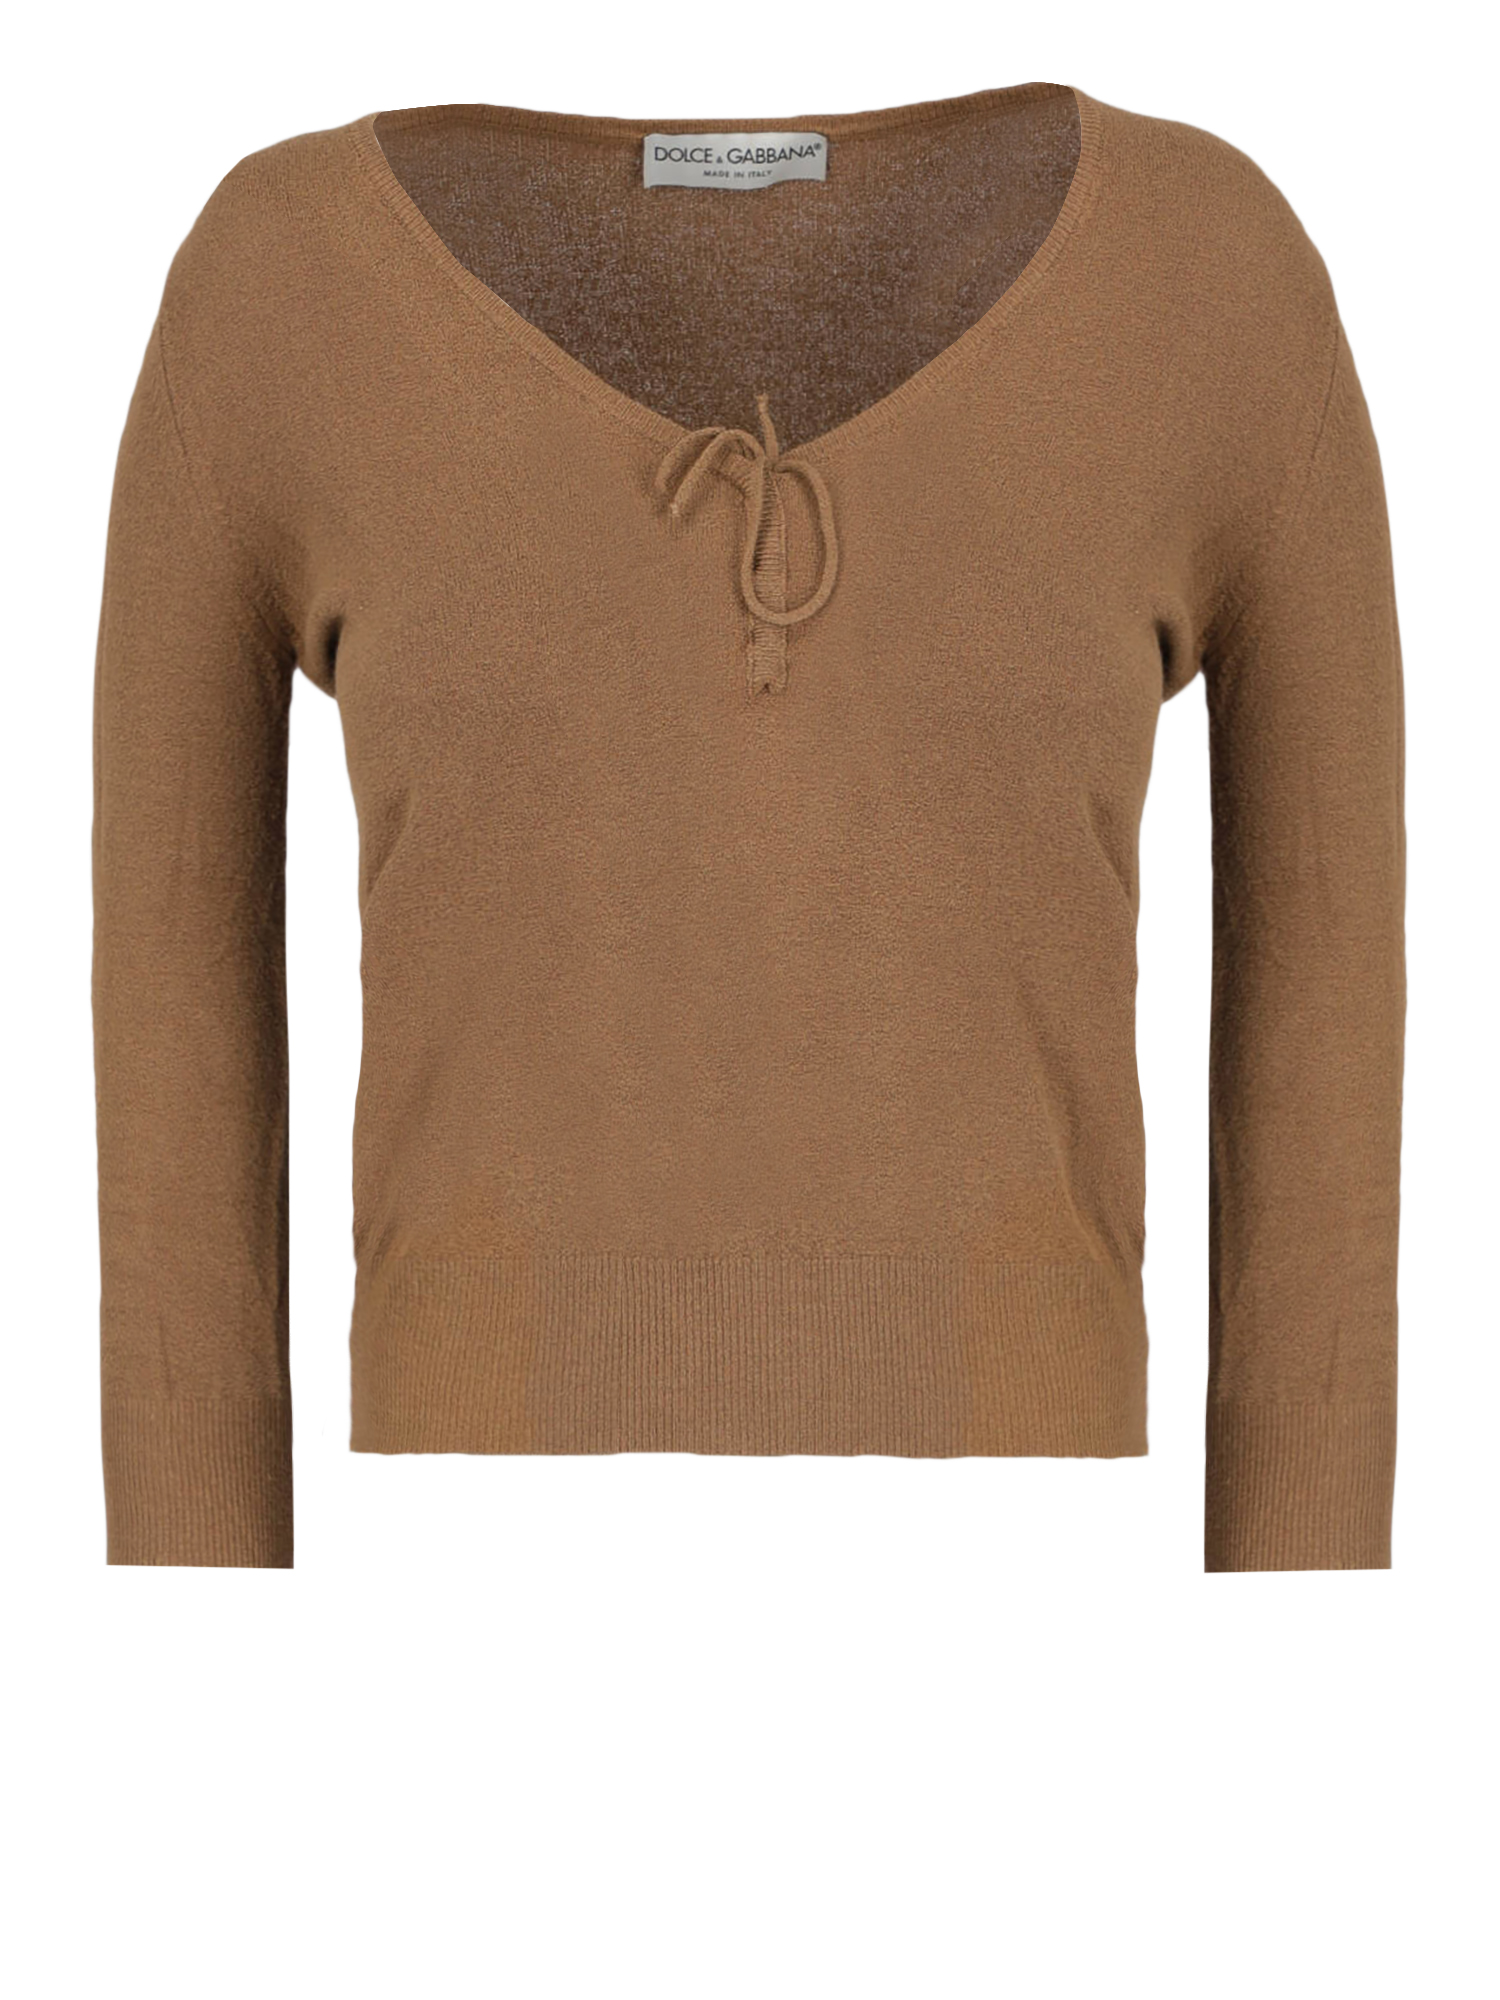 Pre-owned Dolce & Gabbana Women's Knitwear & Sweatshirts -  - In Camel Color M